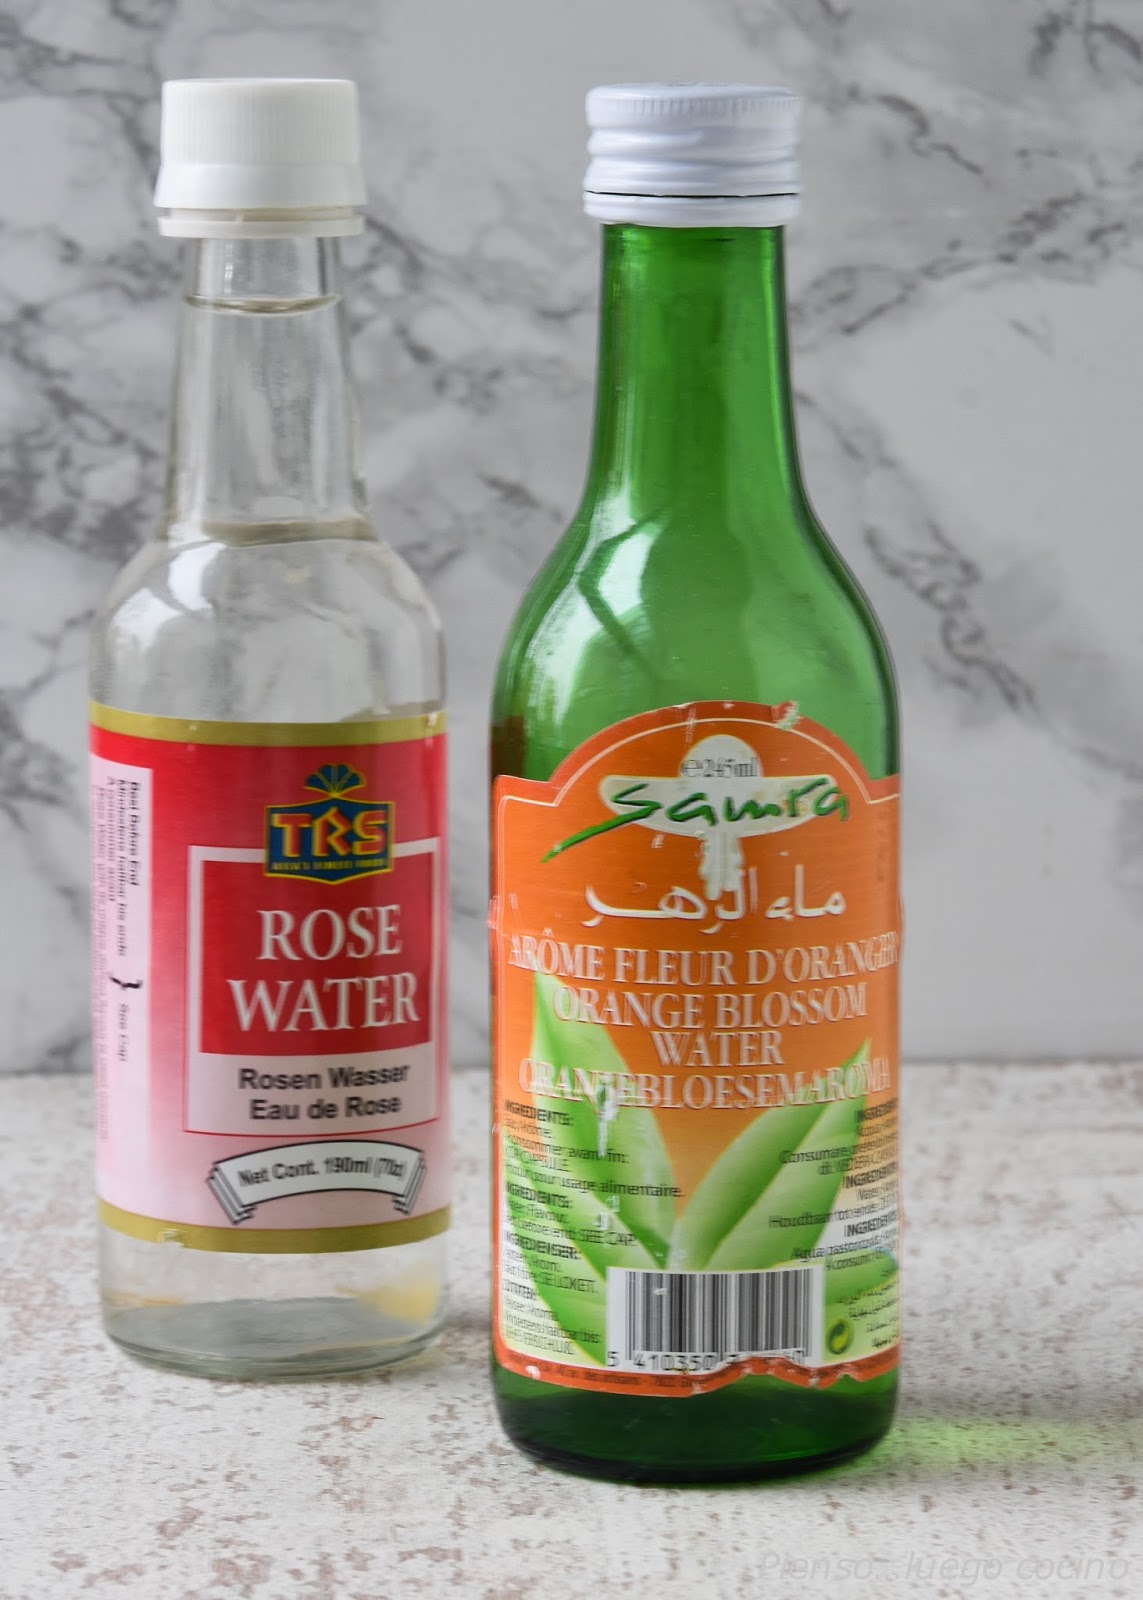 Piensoluego cocino: Agua de azahar / Agua de rosas